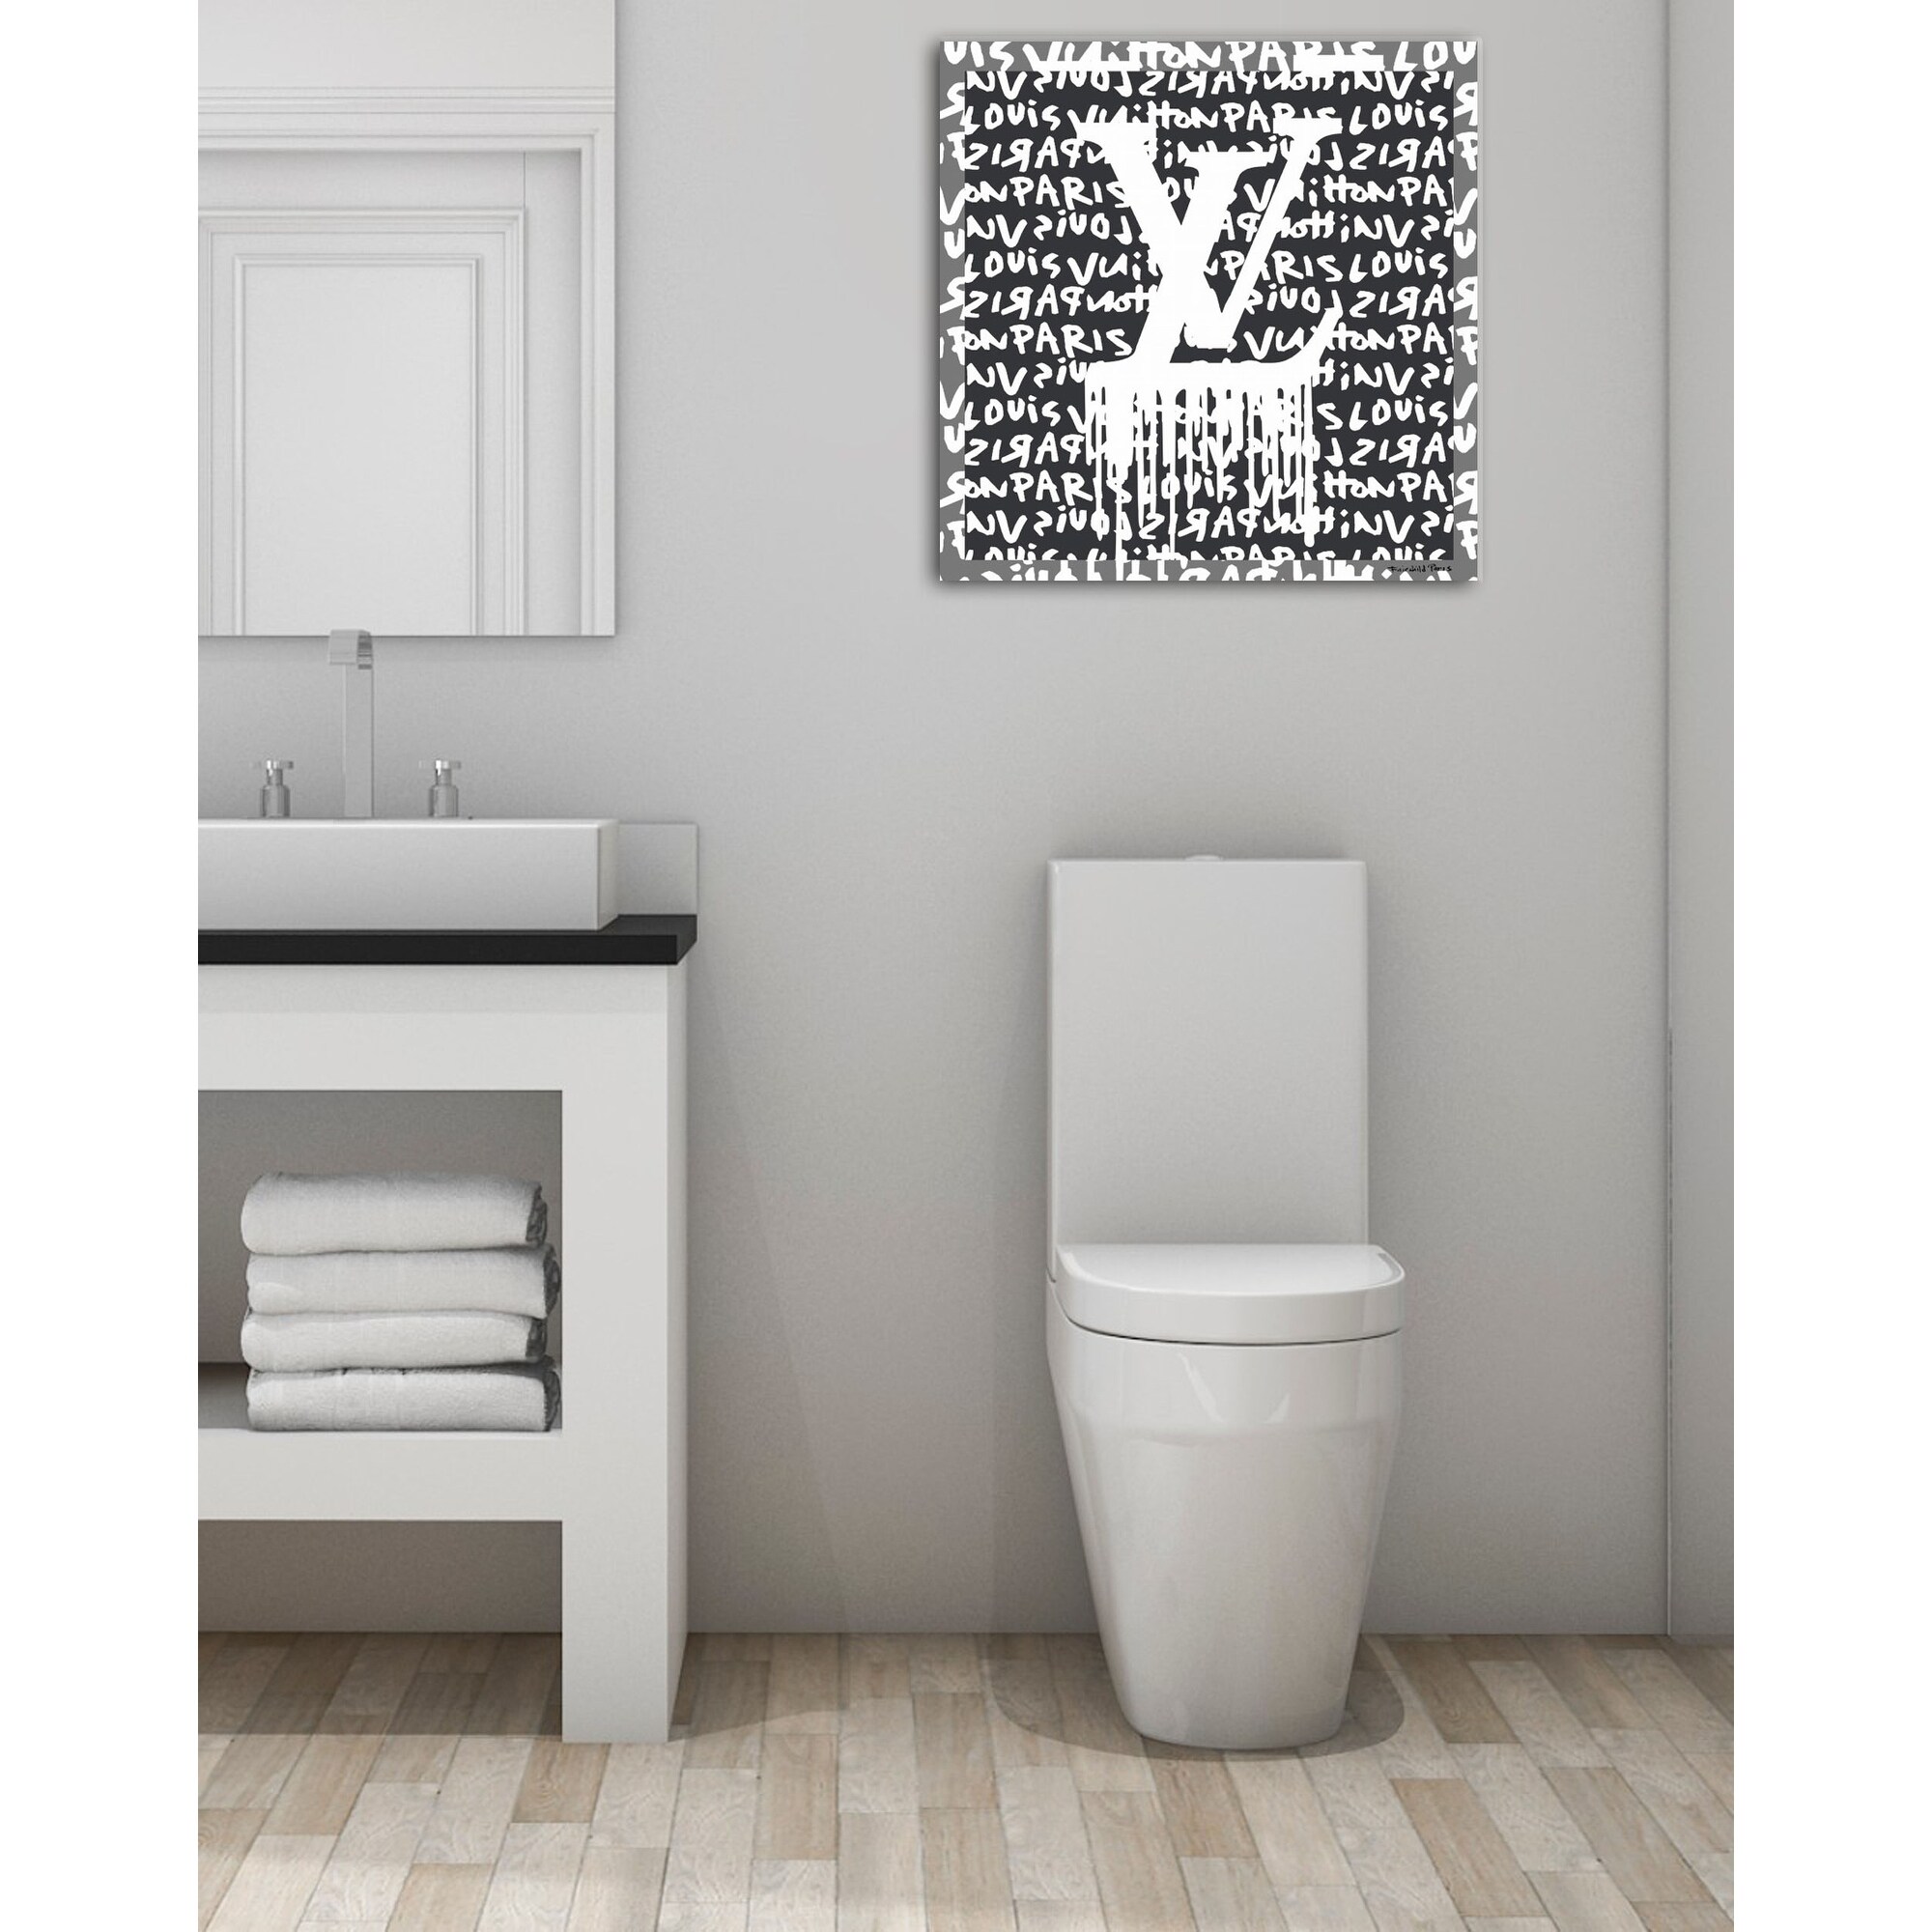 Fairchild Paris - Louis Vuitton Logo Drip - Canvas Wall Art 30 x 30